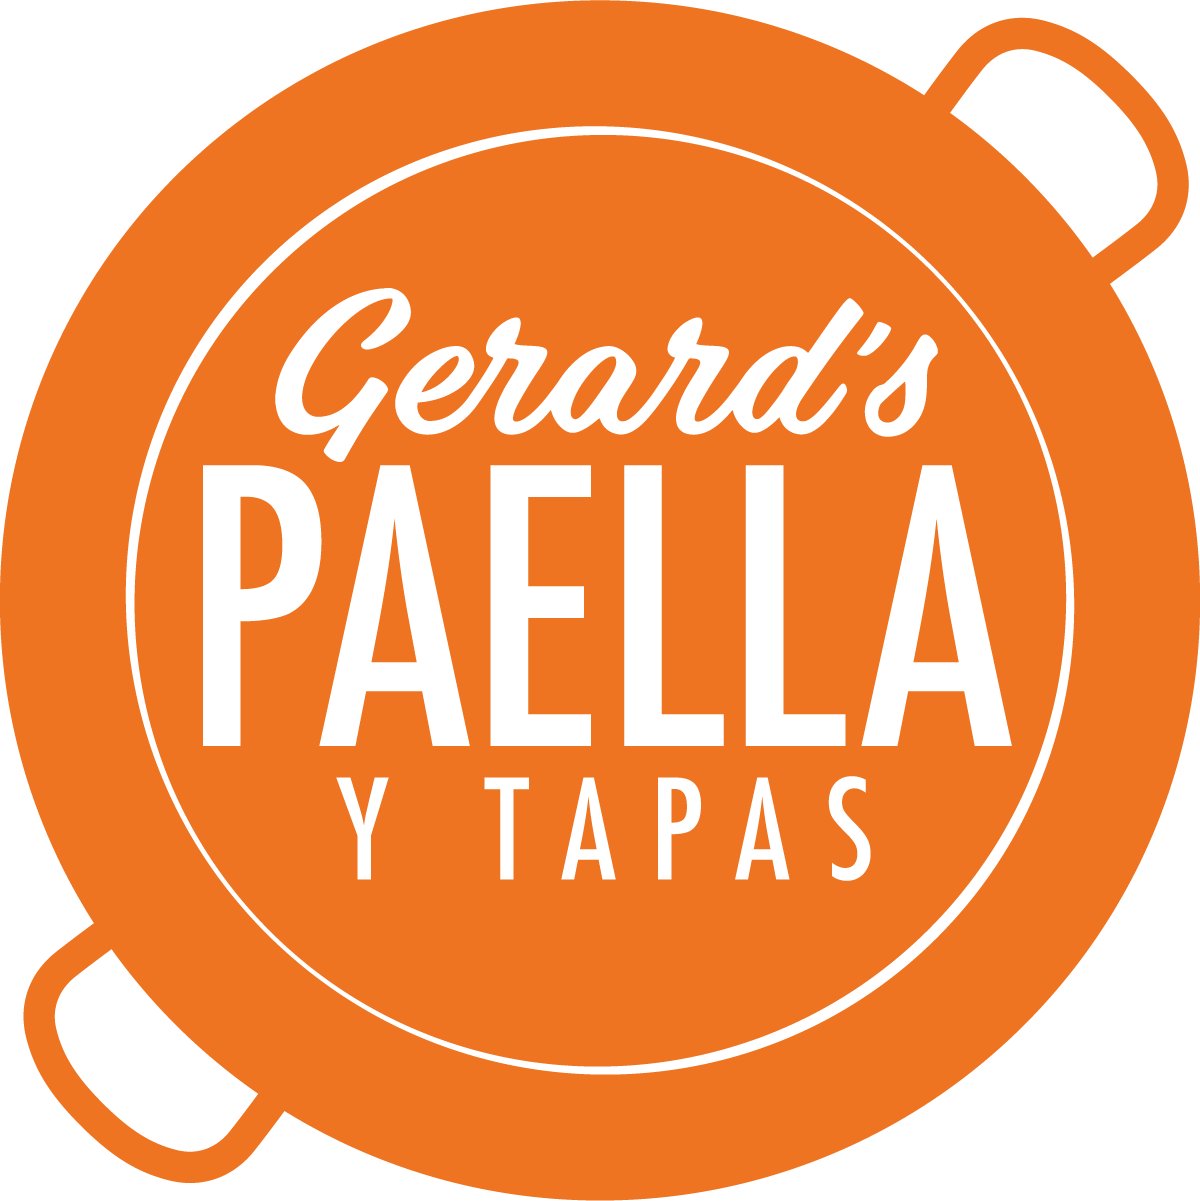 Gerard's Paella y Tapas